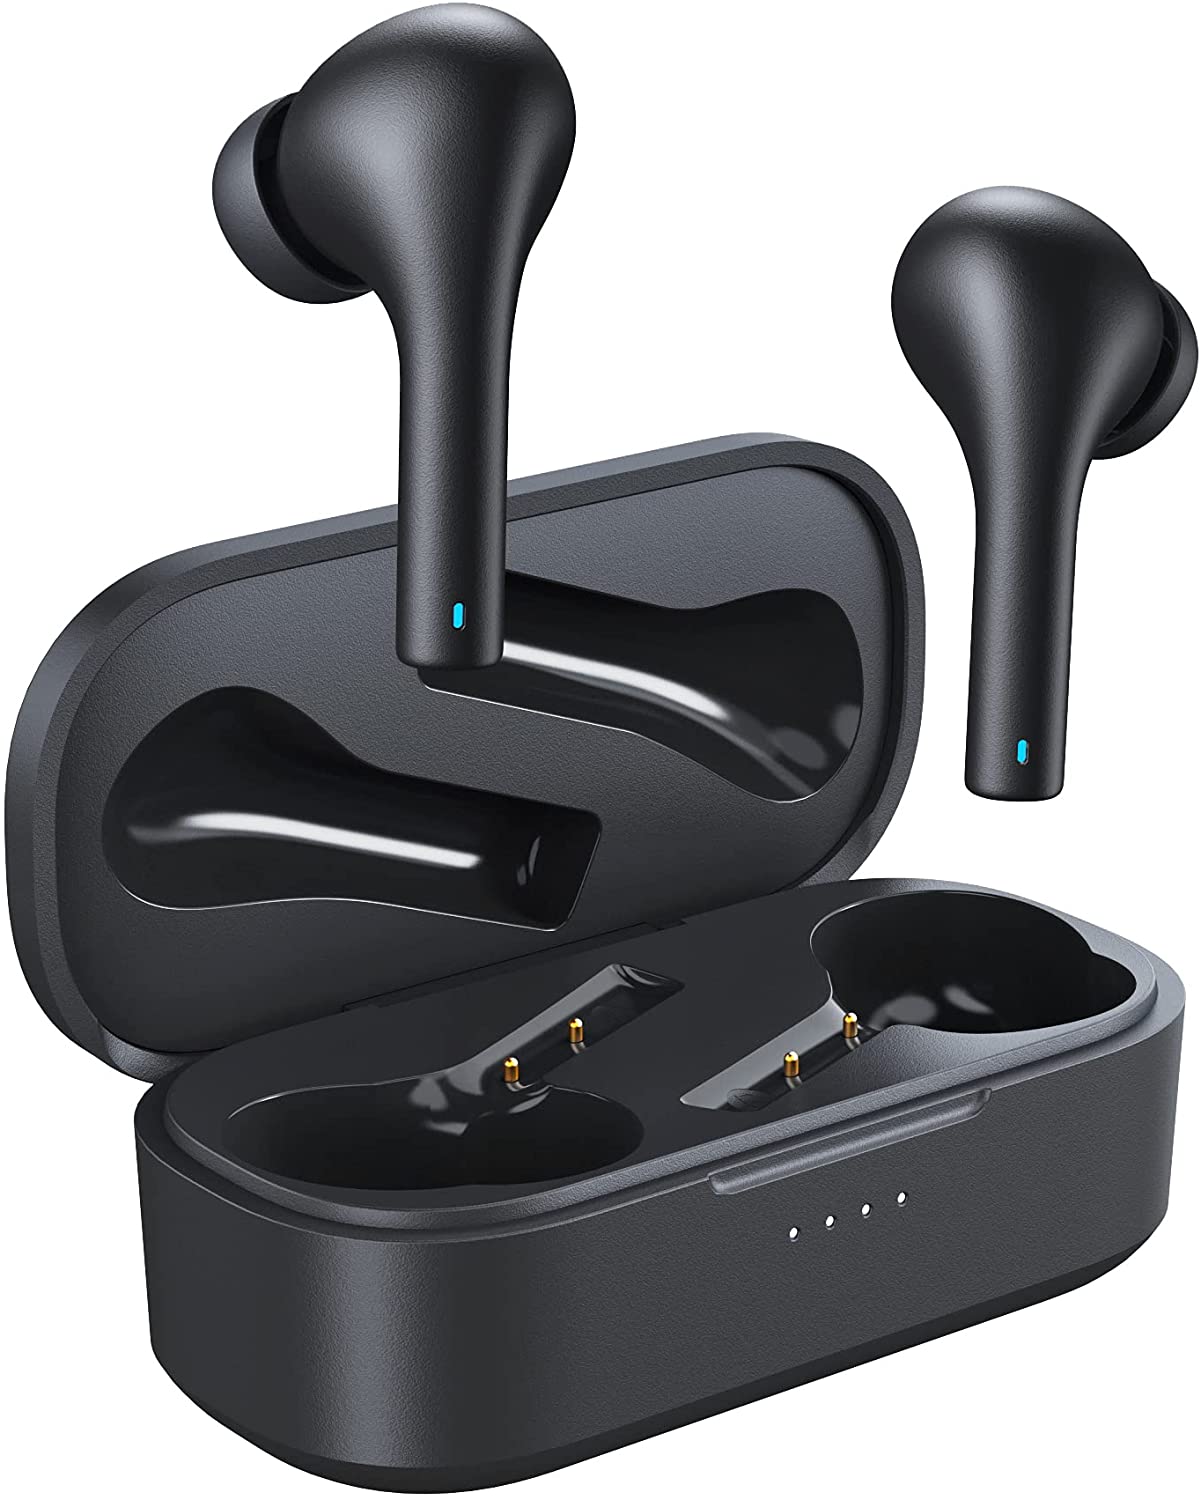 Bild zu Aglaia In-Ear Bluetooth Kopfhörer mit Lade-Case für kabelloses Laden für 20,99€